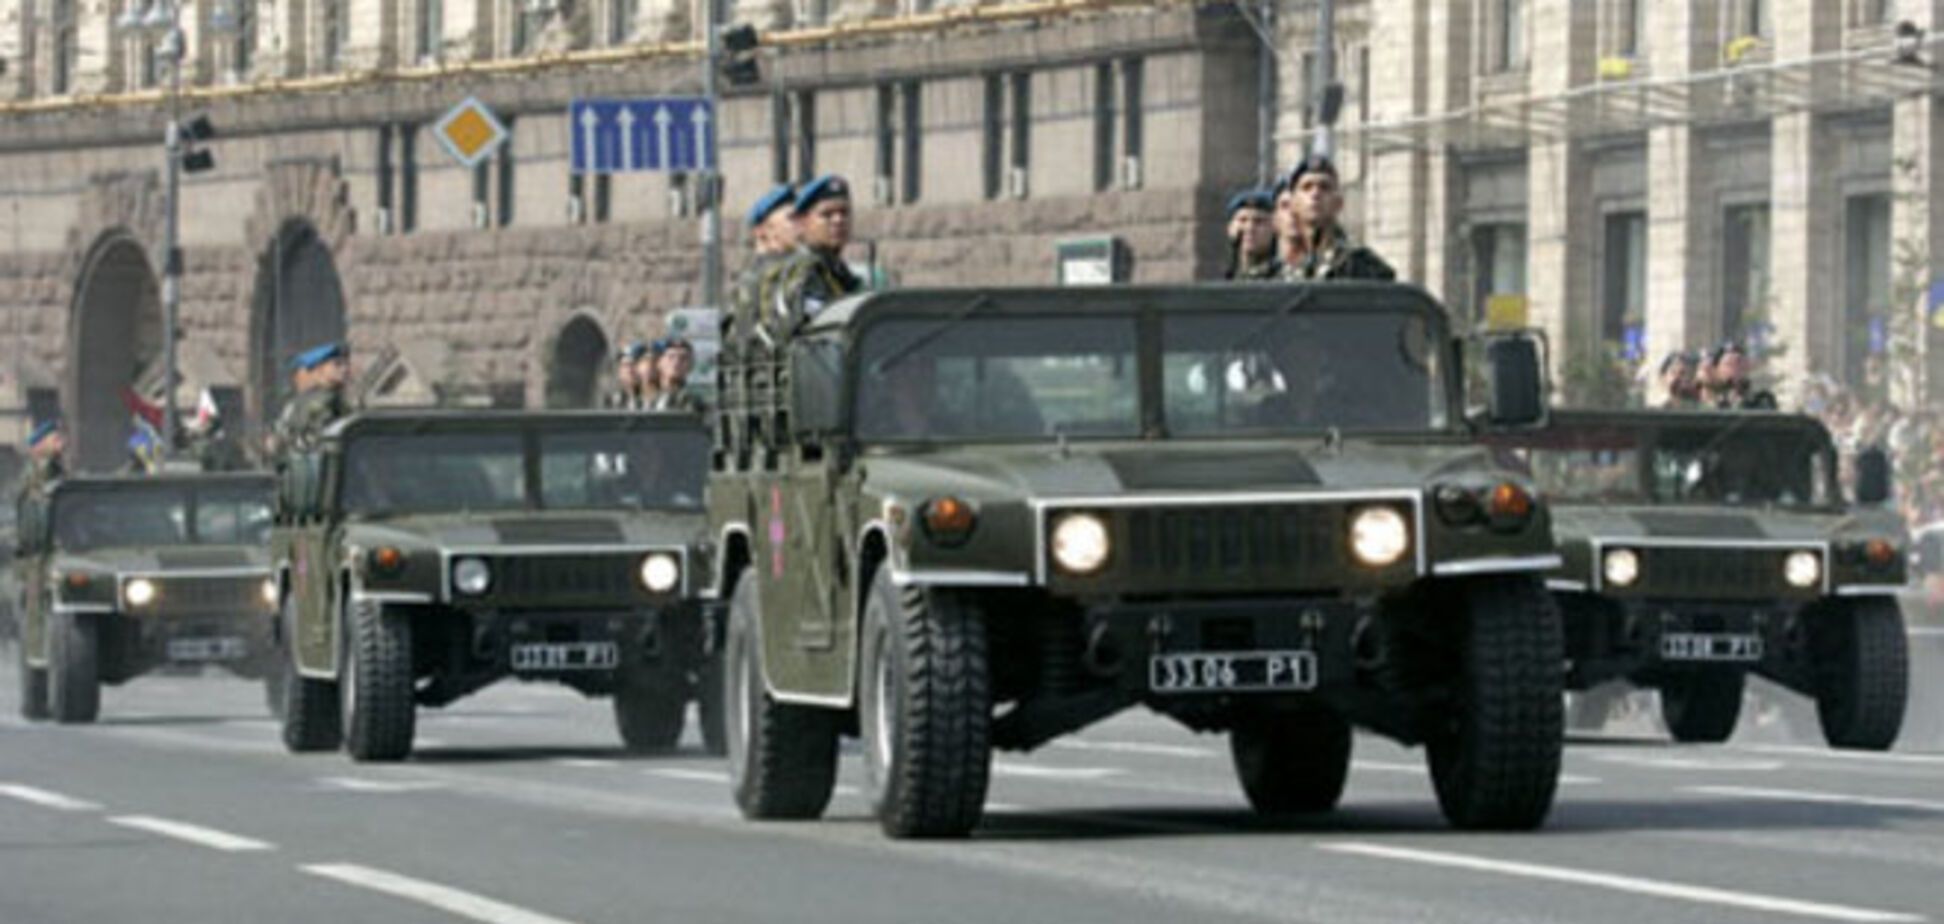 Військовий парад - прояв сили, яку зрозуміє РФ